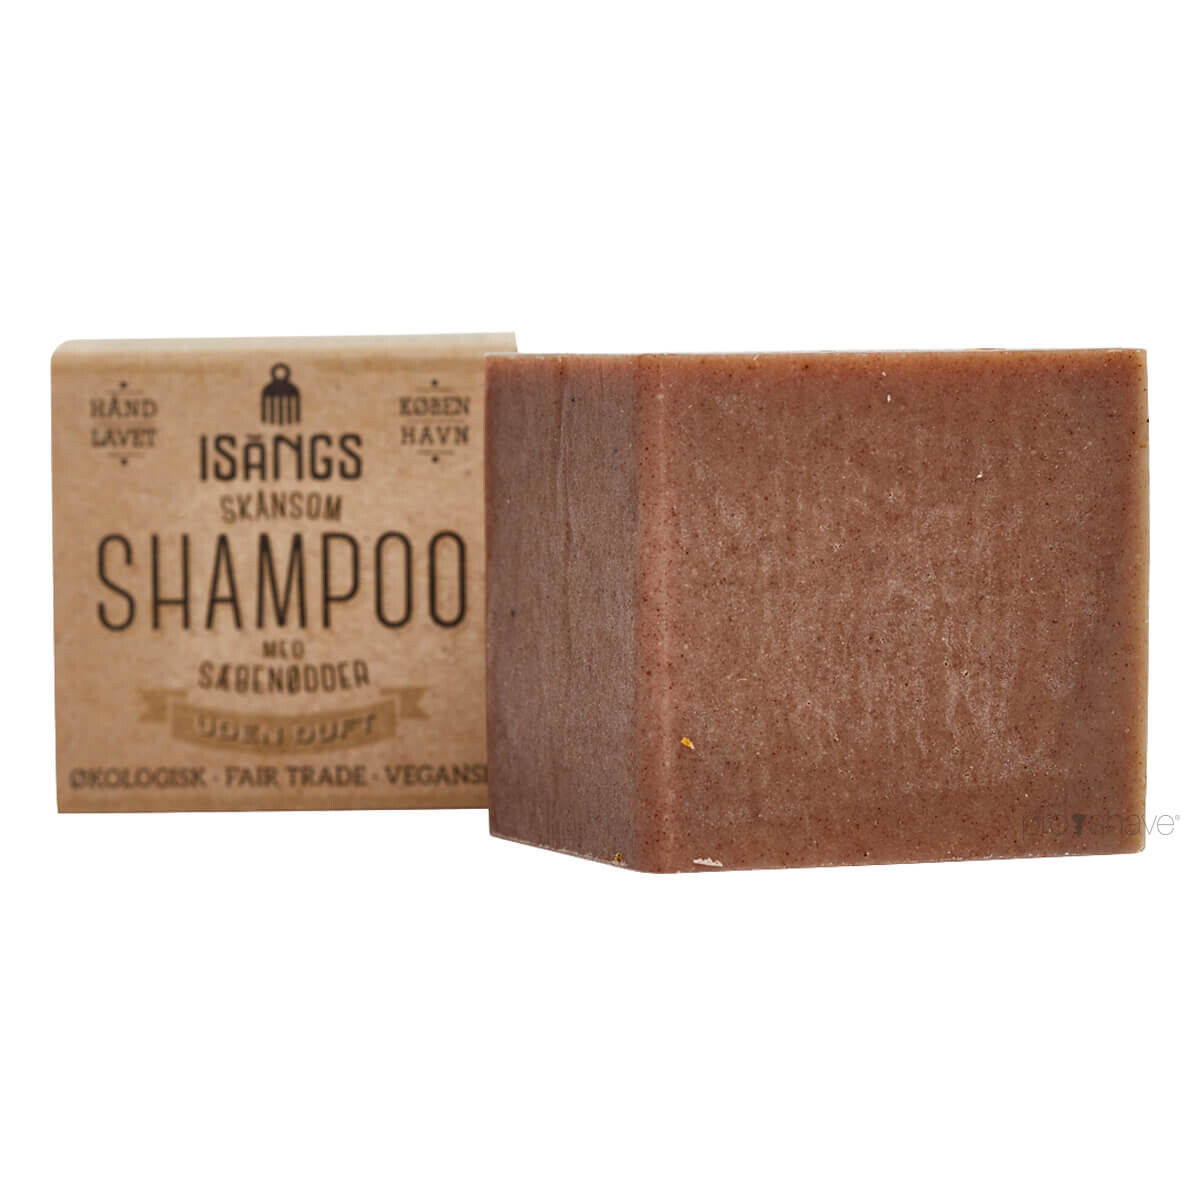 Se Isangs Skånsom Shampoo, Uden duft, 125 gr. hos Proshave